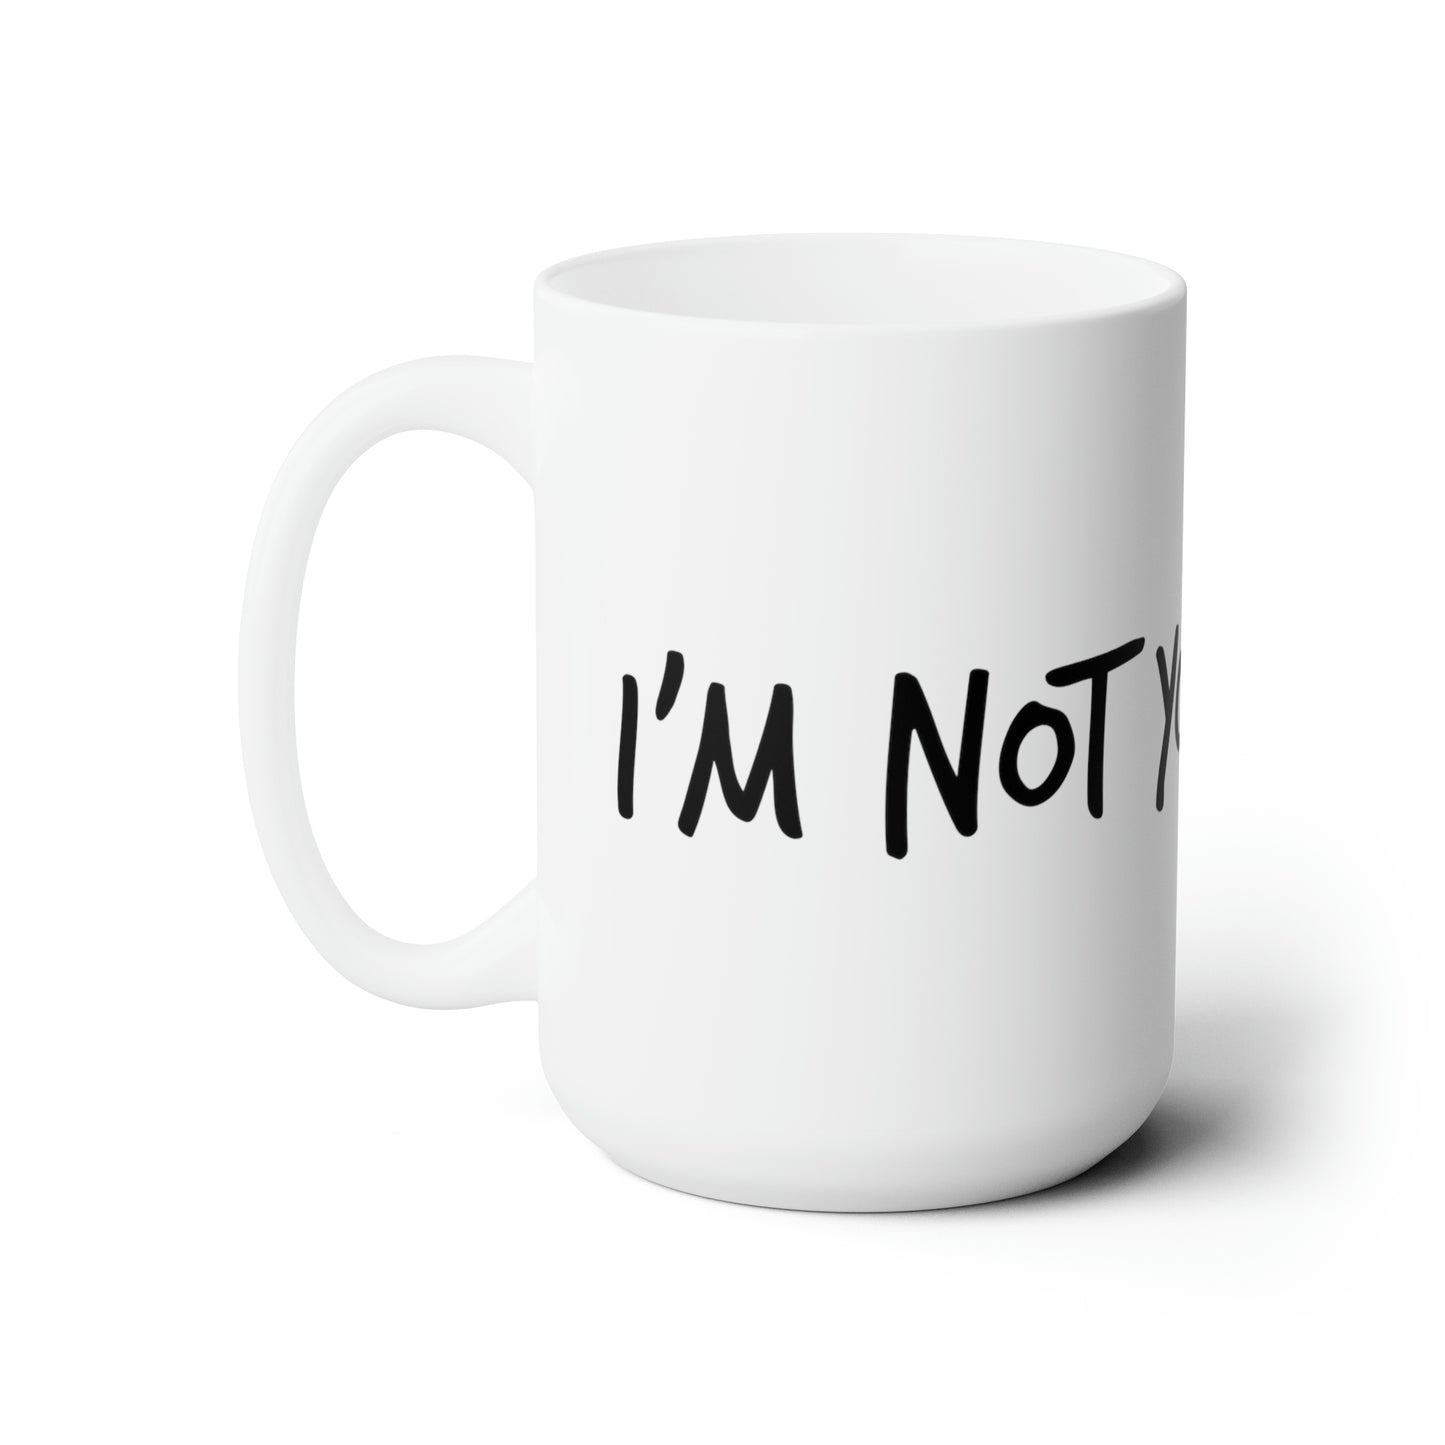 I'm Not Your Friend - Ceramic Mug 15oz